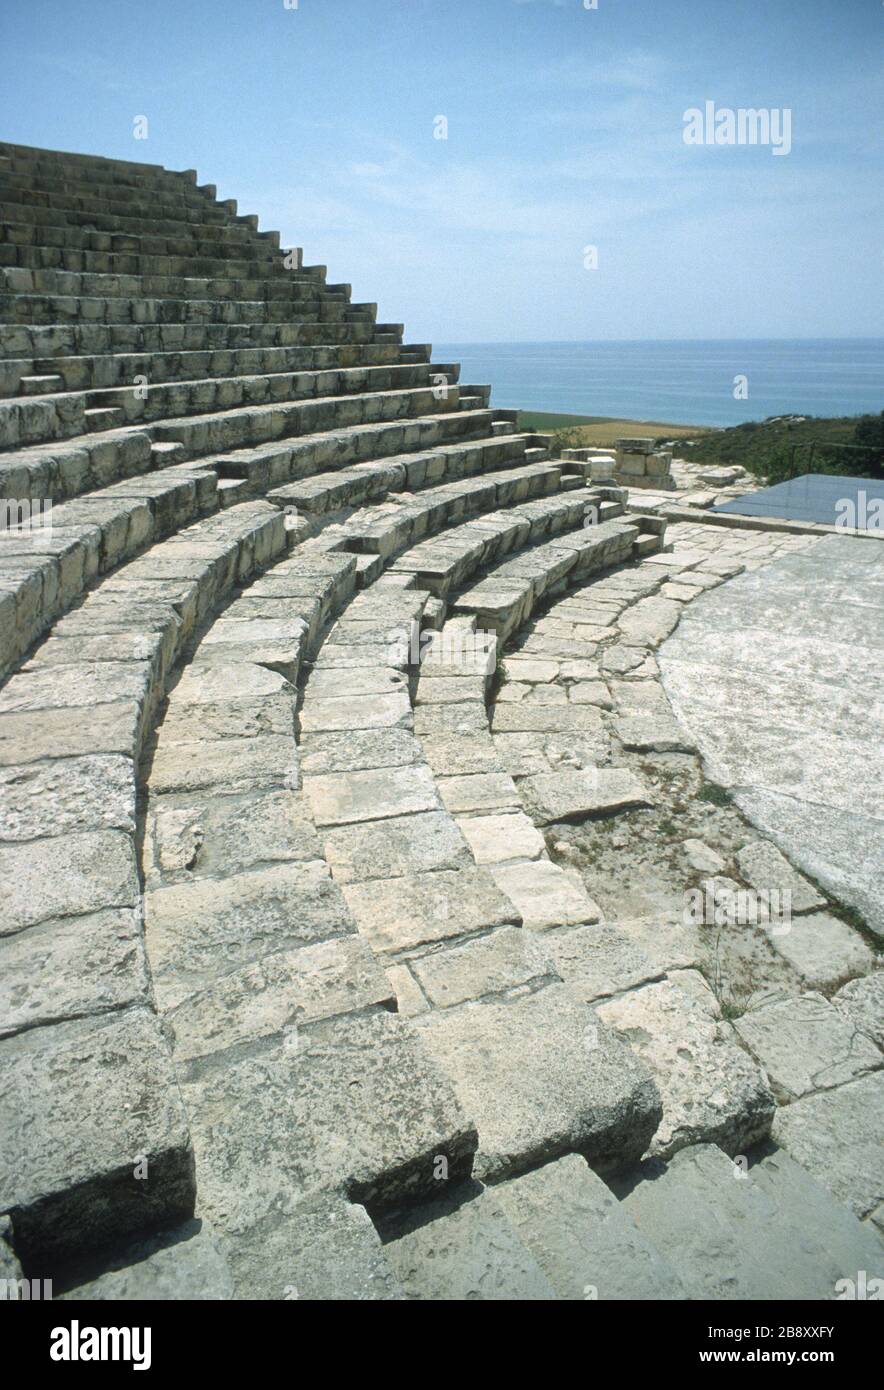 Resti dello spettacolare teatro greco in cima alla scogliera a Kourion, Episkopi, Limassol, Cipro. Posti a sedere in pietra in file circolari nell'auditorium e i gradini utilizzati per raggiungere ogni livello. Cielo blu e il profondo blu del Mediterraneo sullo sfondo. Foto Stock